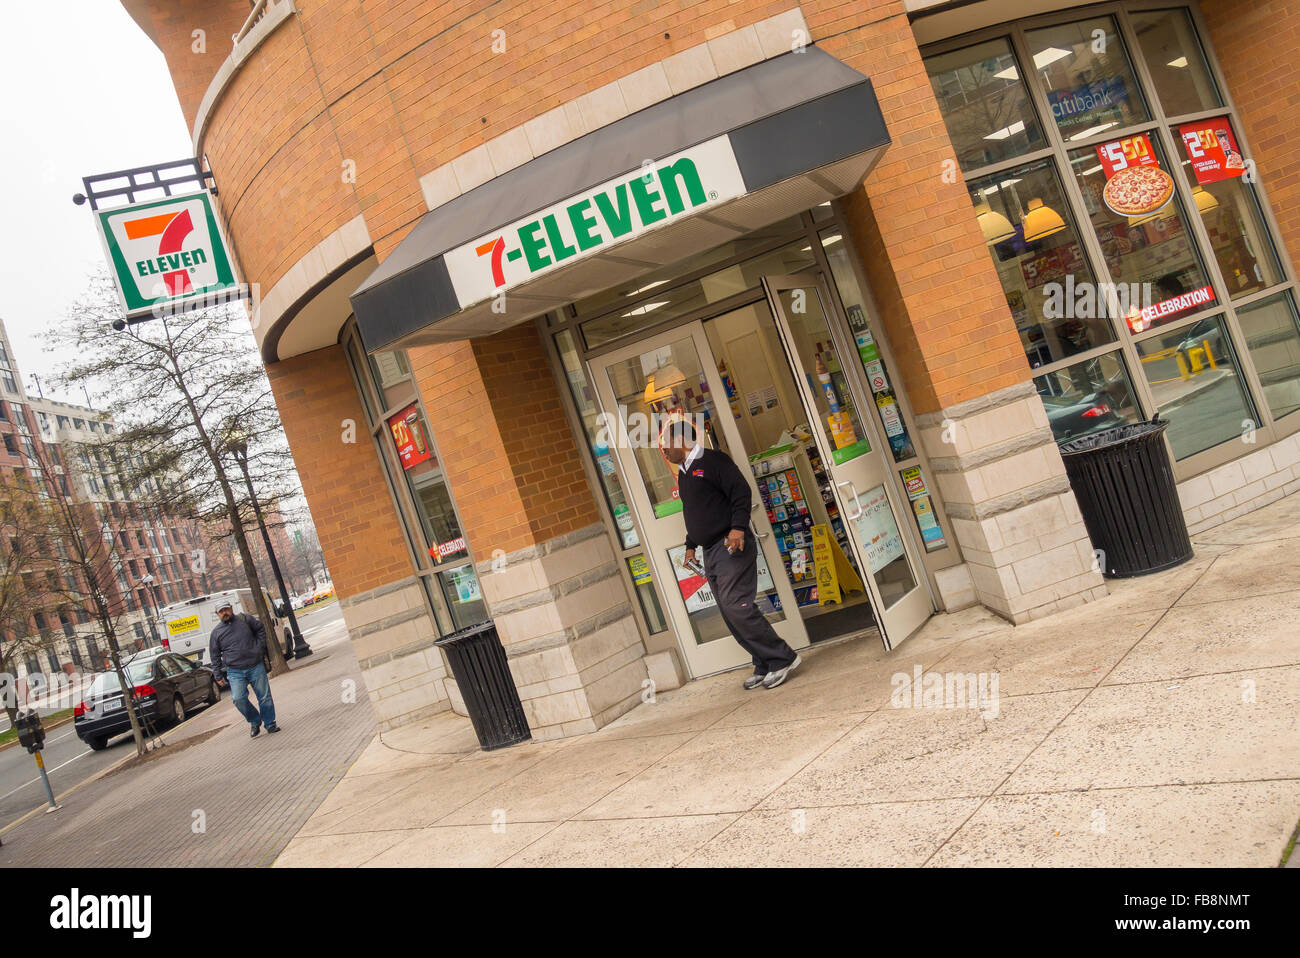 ARLINGTON, VIRGINIA, USA - Homme laissant 7-Eleven dépanneur à Clarendon quartier. Banque D'Images